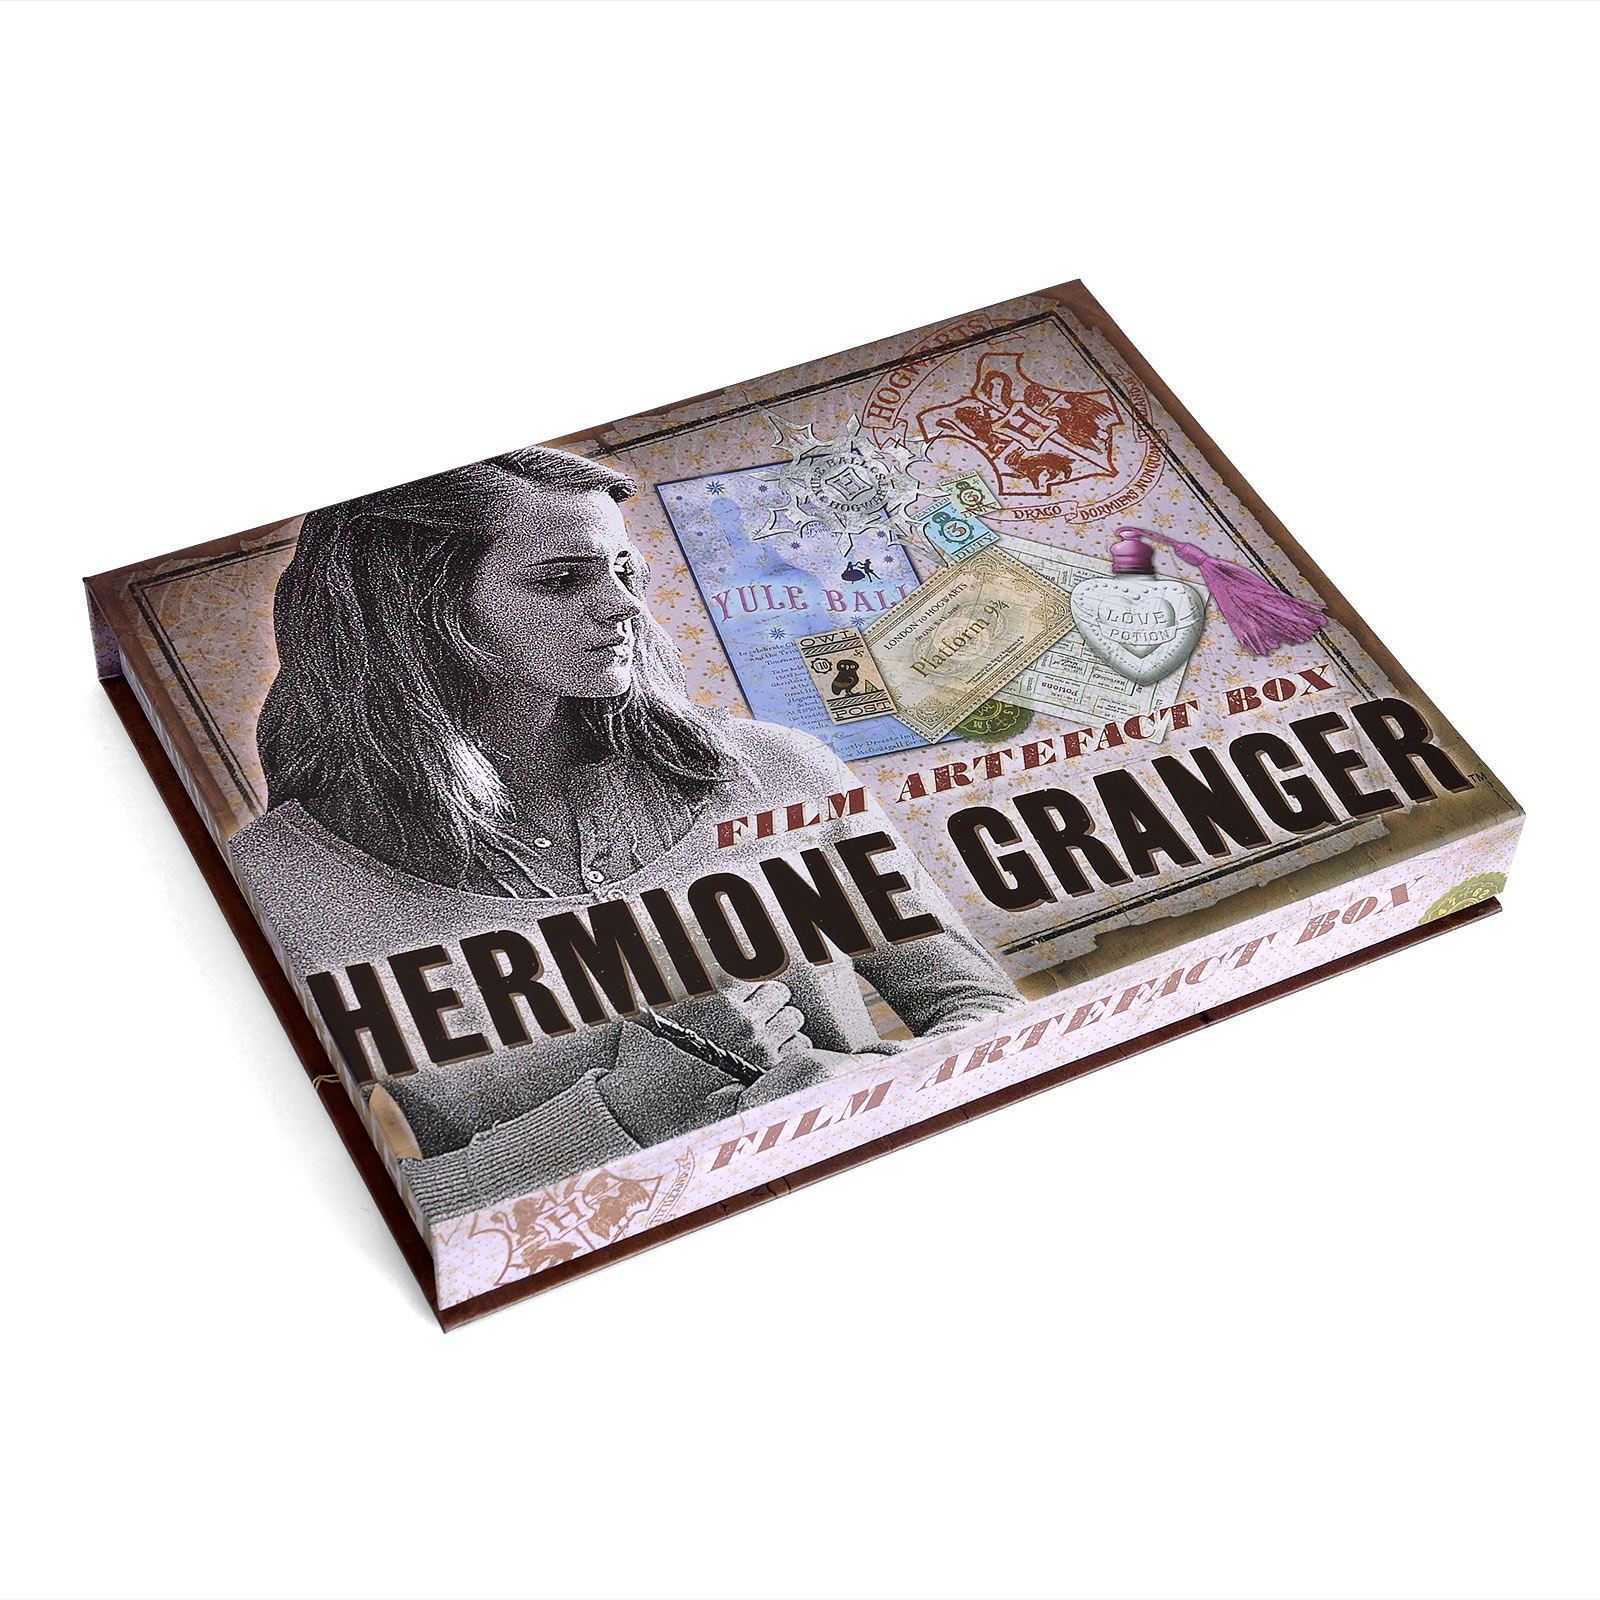 Hermine Granger Artefakt Box